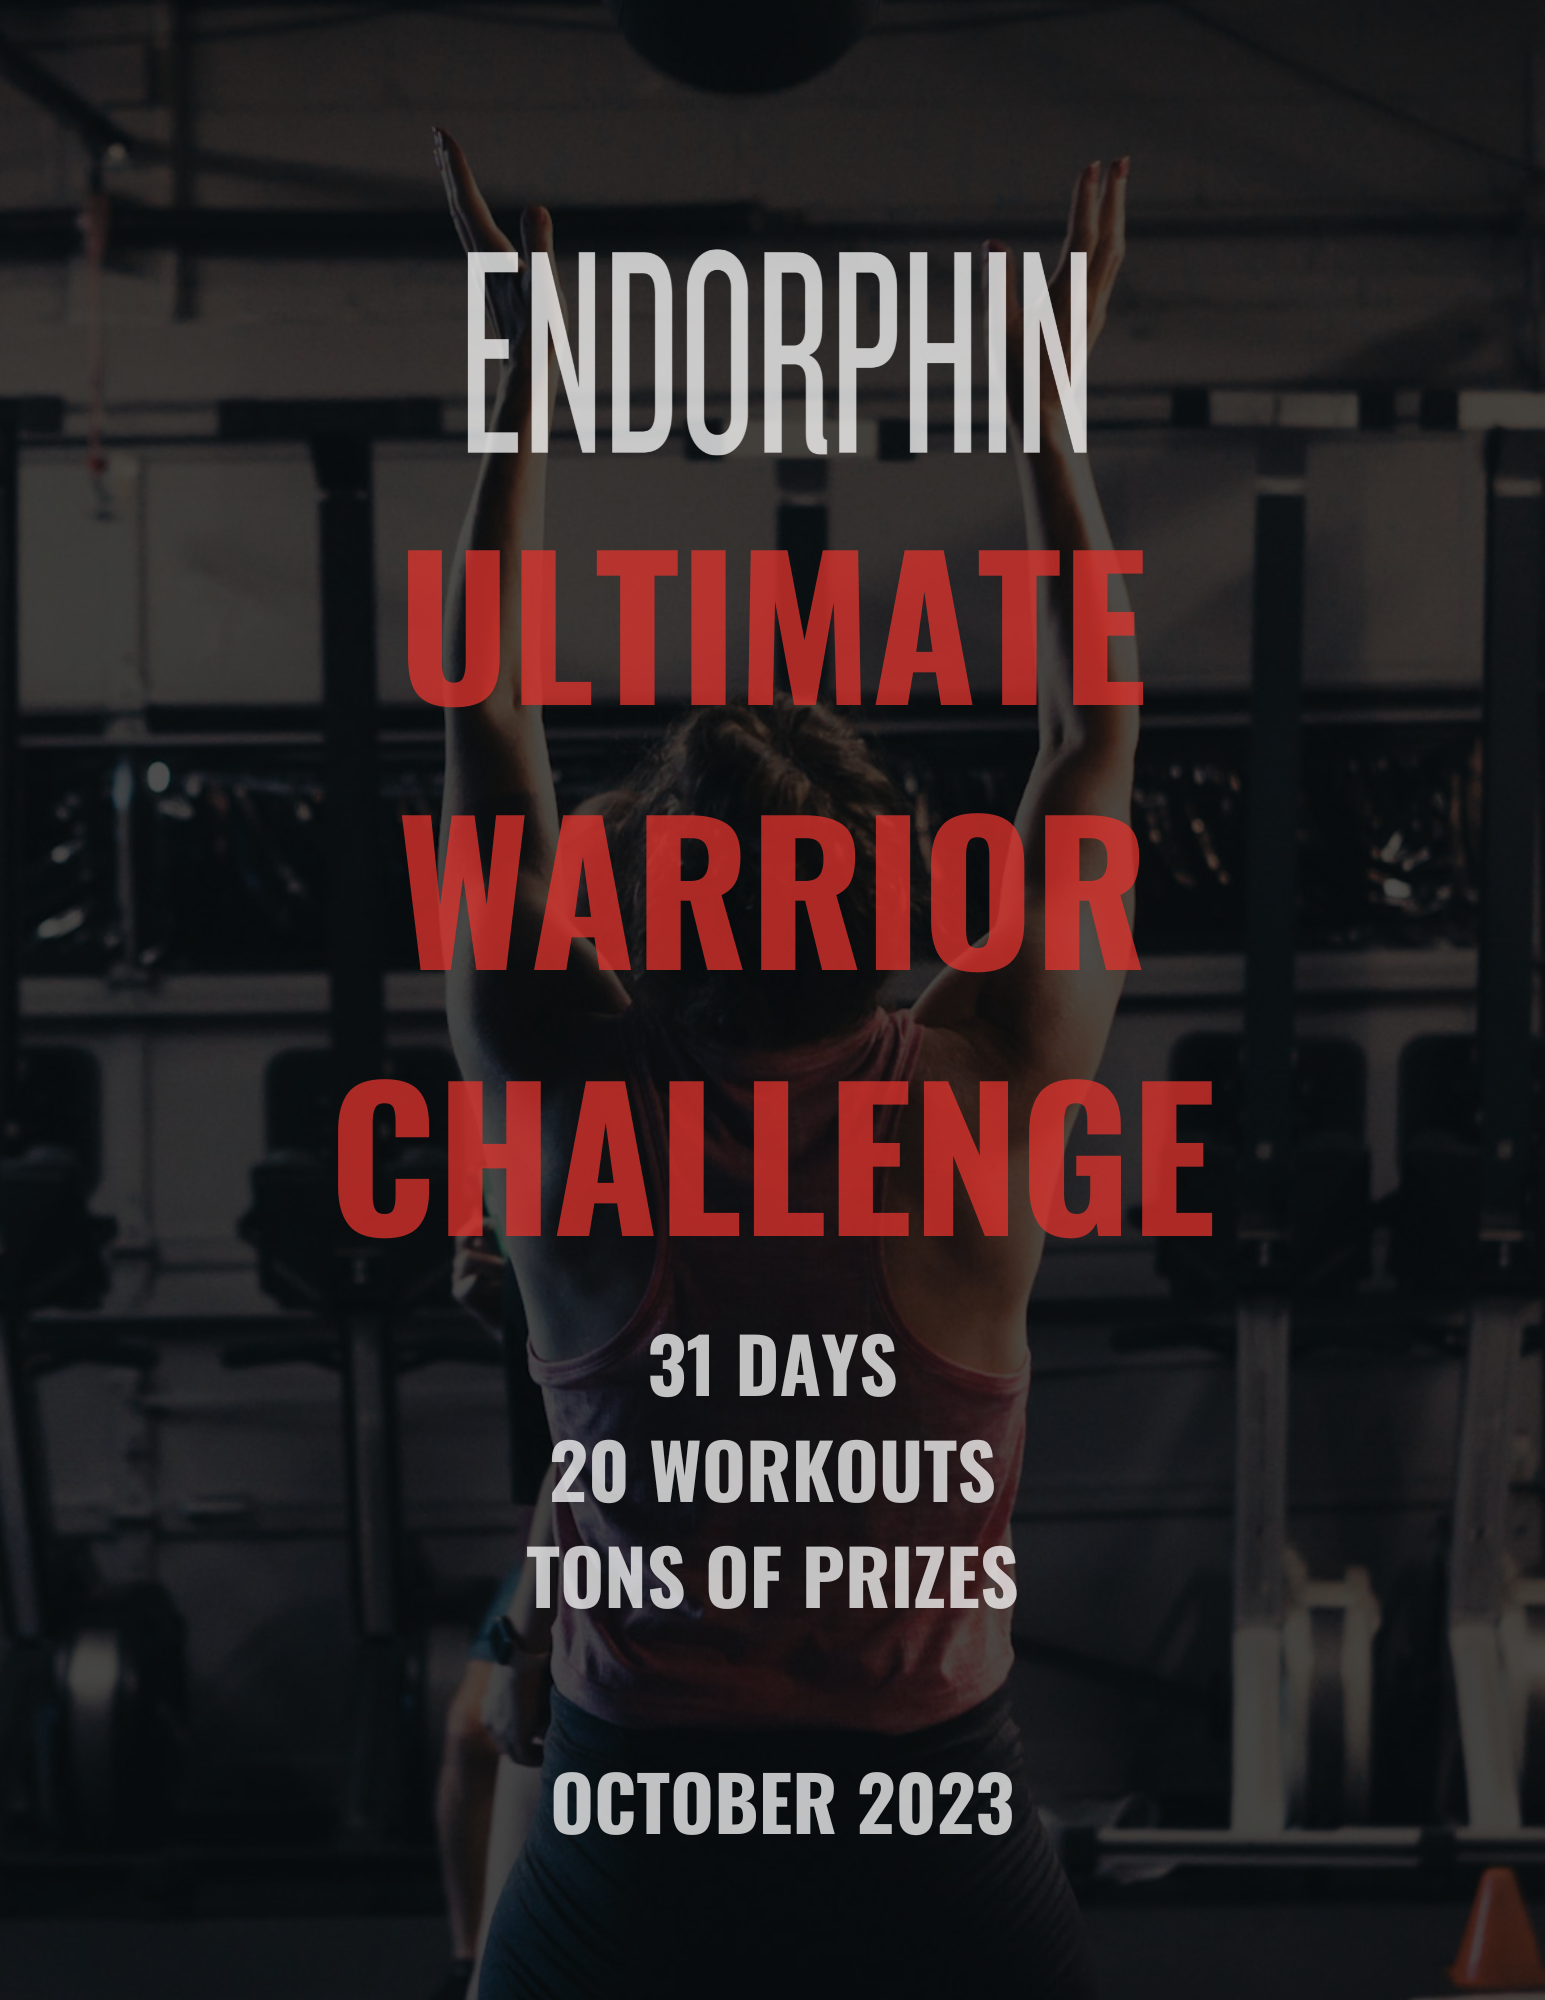 
Ultimate Warrior Challenge